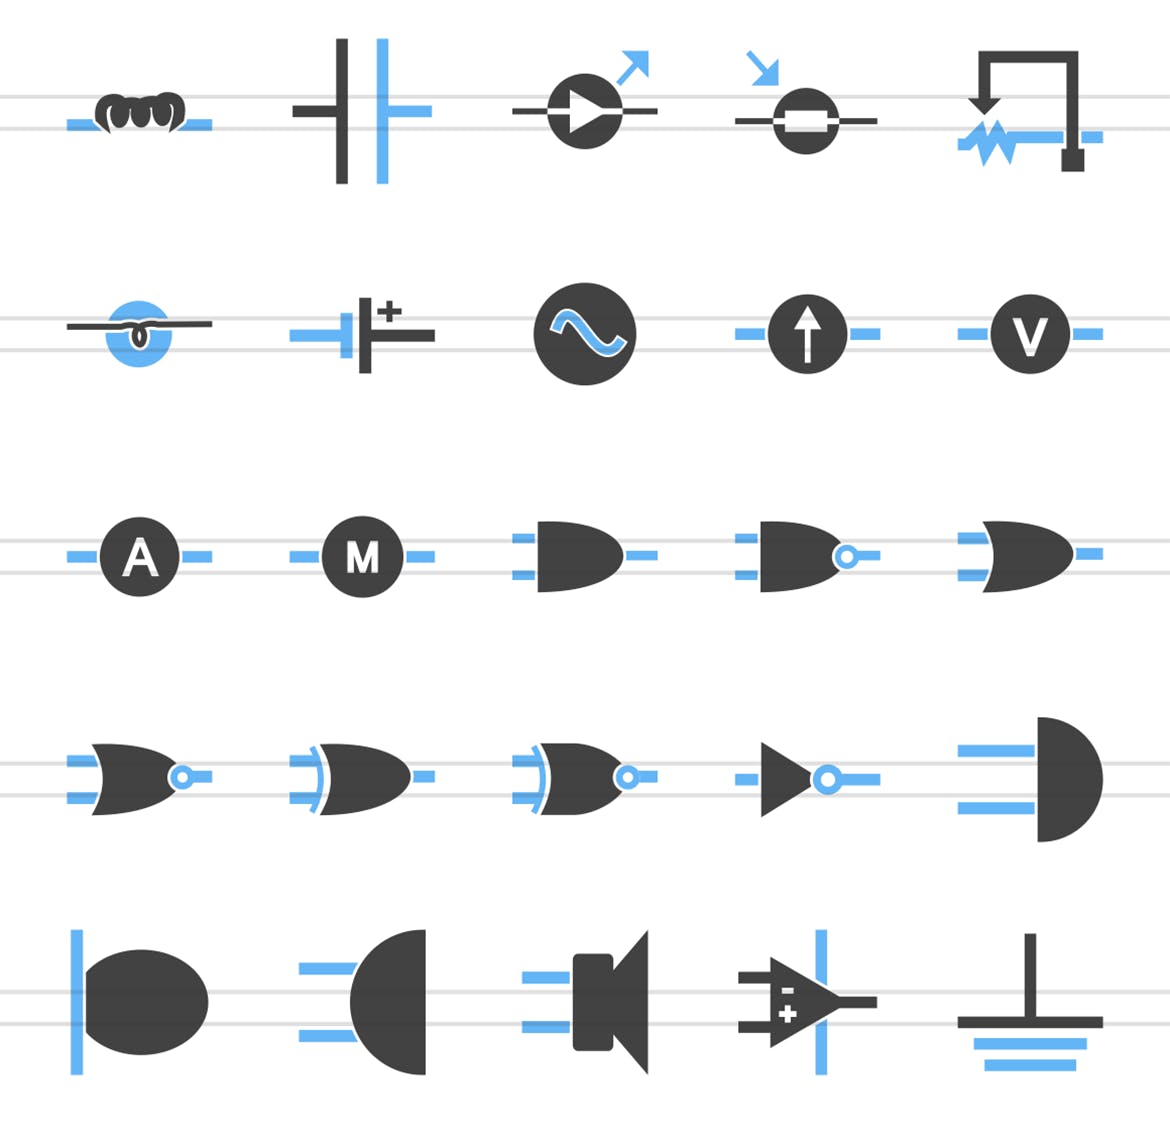 50枚电路线路板主题蓝黑色矢量蚂蚁素材精选图标 50 Electric Circuits Blue & Black Icons插图(2)